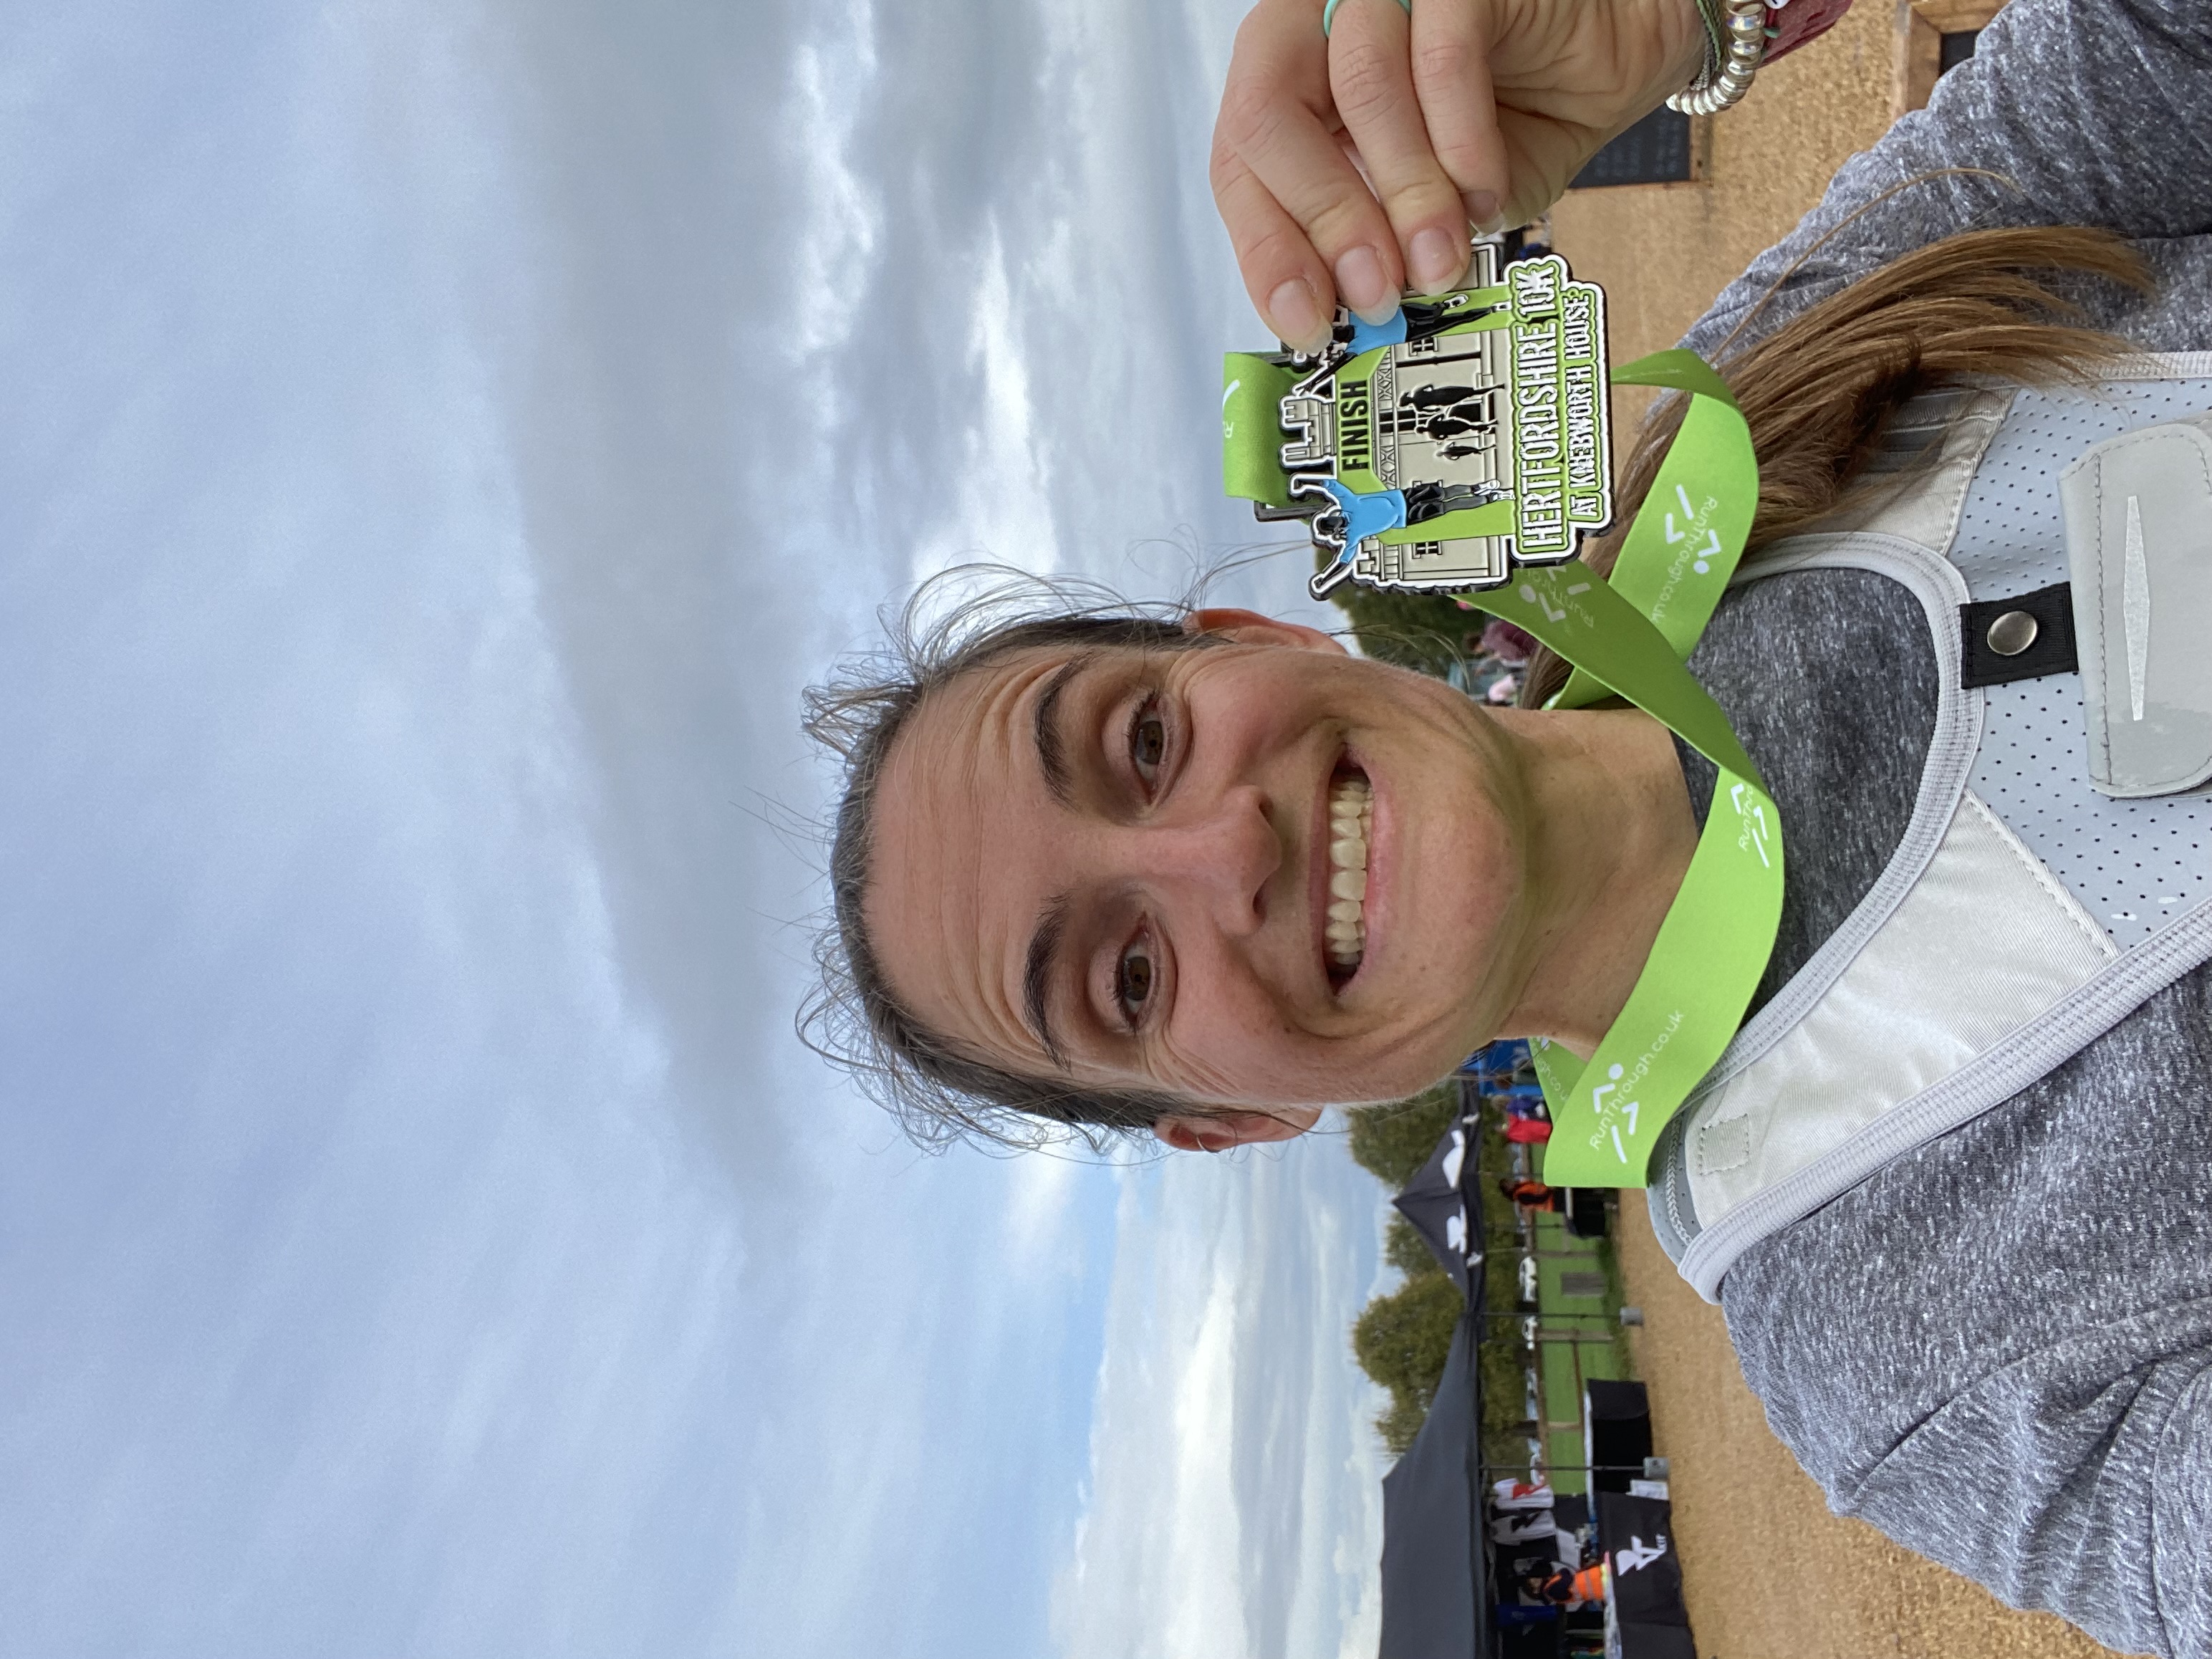 Runner Feature - Anne-Lise Fitzgerald RunThrough Running Club London